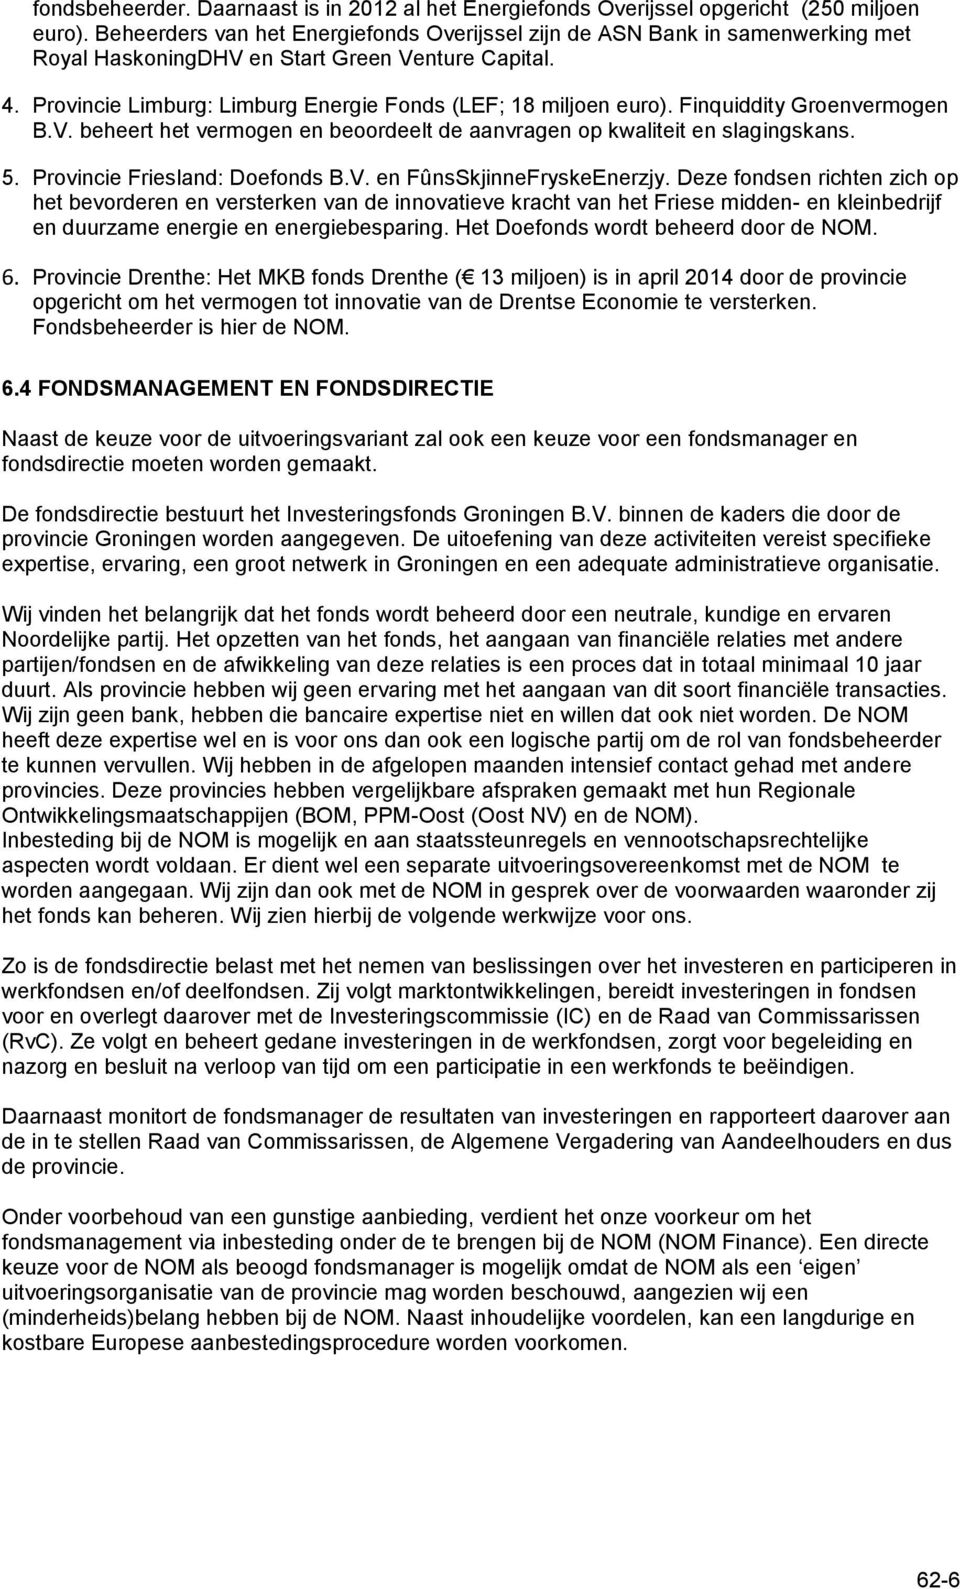 Finquiddity Groenvermogen B.V. beheert het vermogen en beoordeelt de aanvragen op kwaliteit en slagingskans. 5. Provincie Friesland: Doefonds B.V. en FûnsSkjinneFryskeEnerzjy.